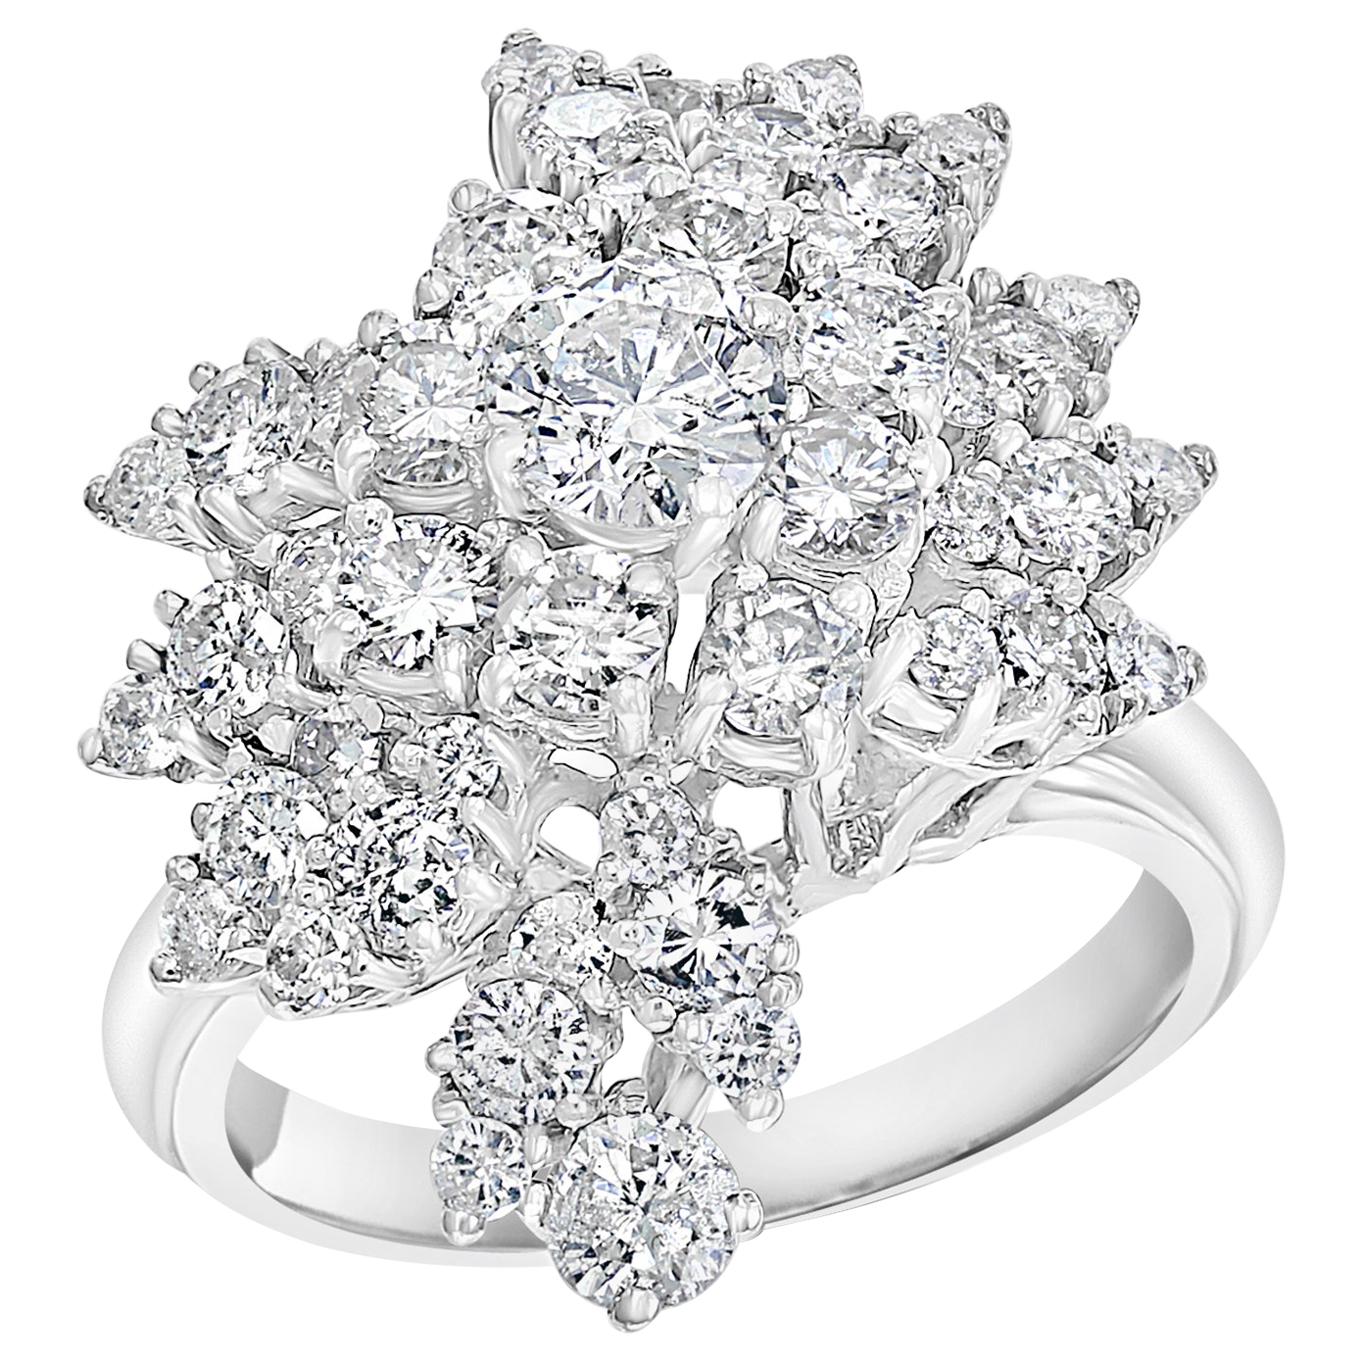 2.5 Carat Diamond Cluster Cocktail Ring 18 Karat White Gold 12.8 Grams Ring For Sale